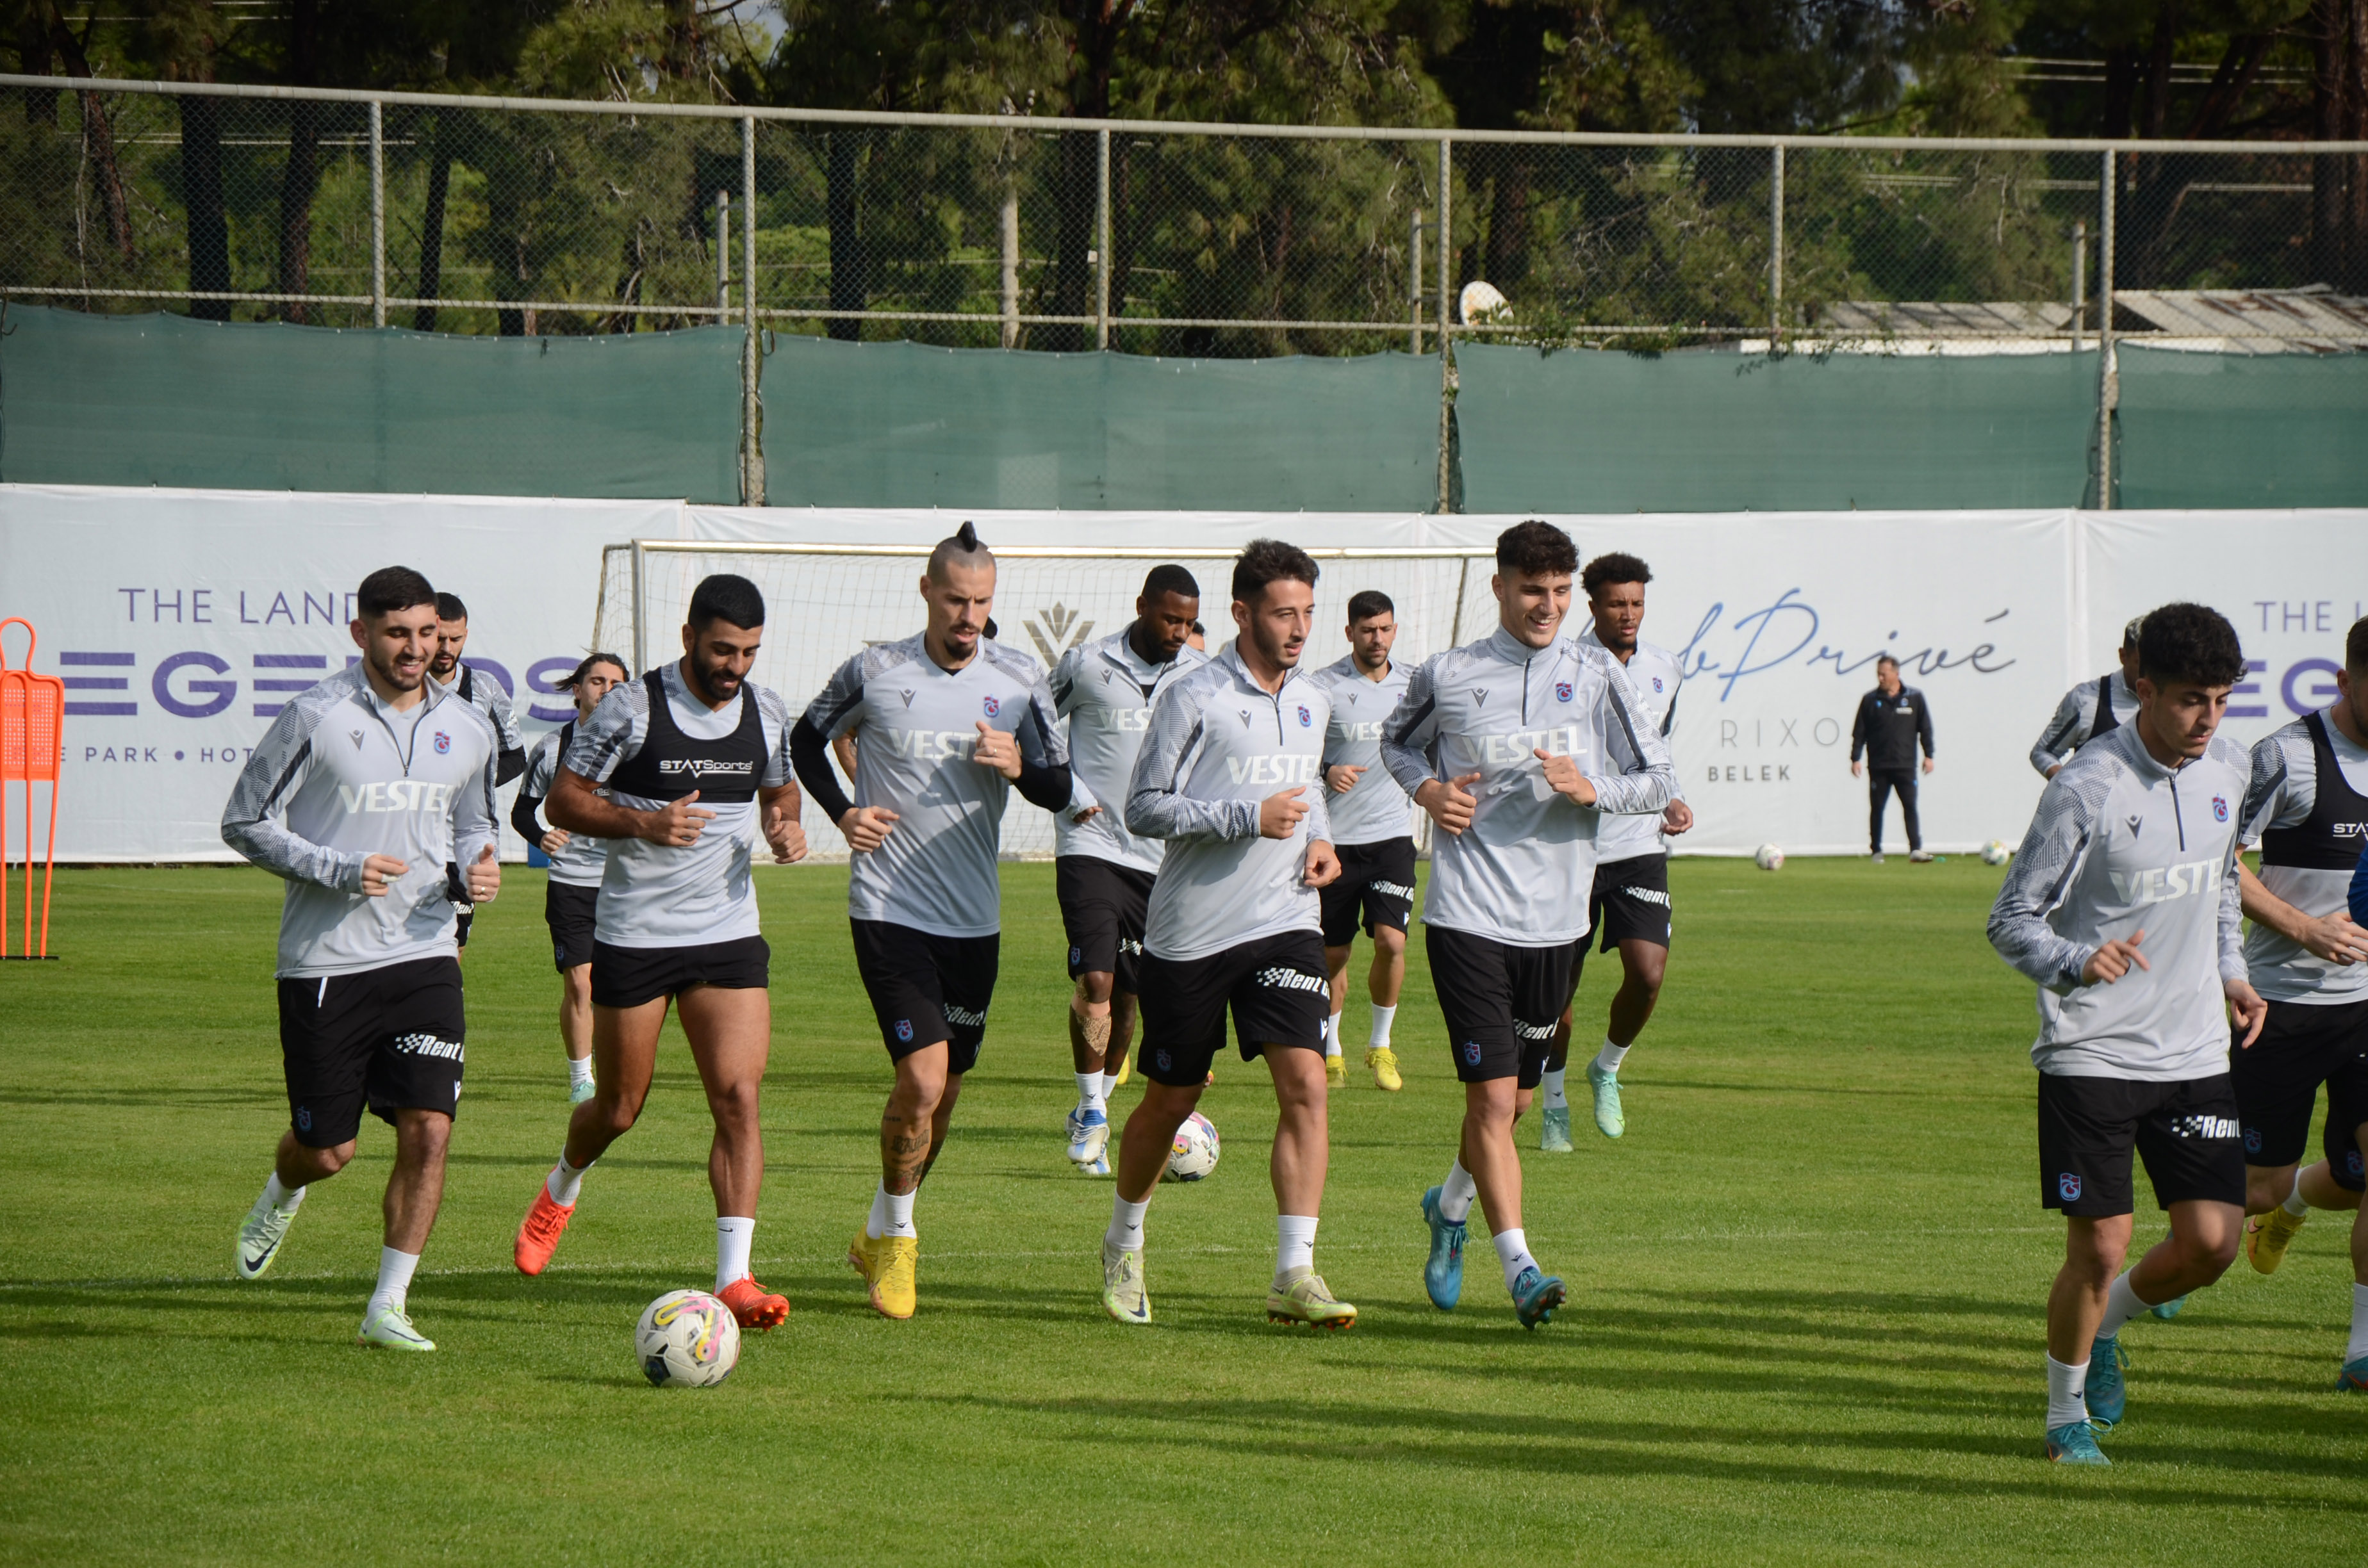 Trabzonspor’un Antalya kampı devam ediyor